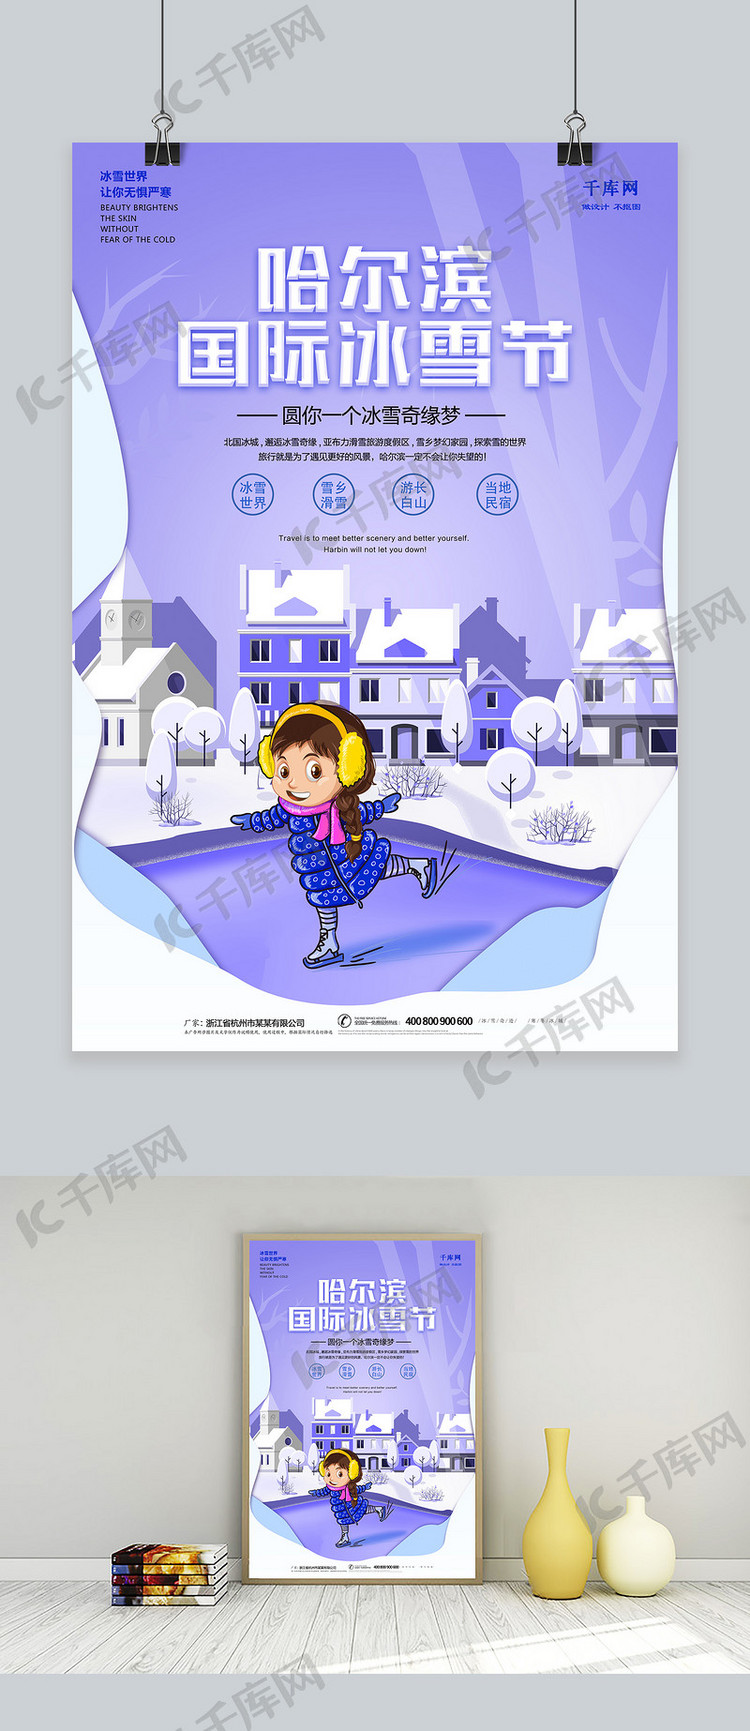 创意时尚哈尔滨国际冰雪节海报